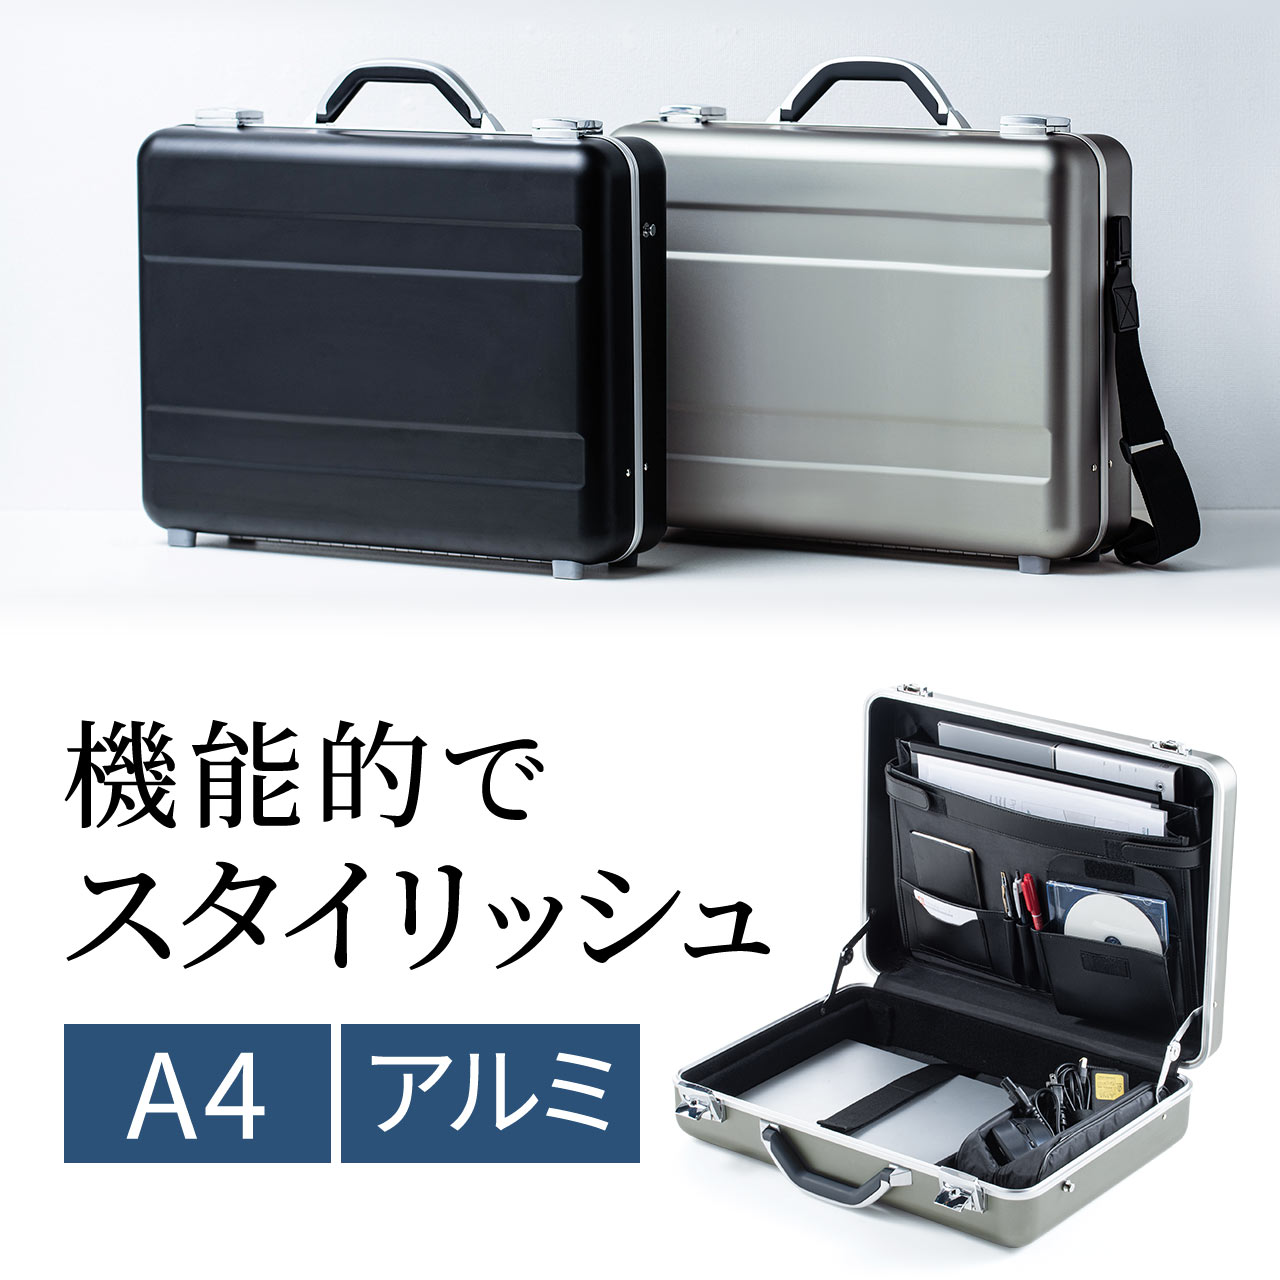 アタッシュケース（アルミケース・通勤・A4・パソコン収納対応